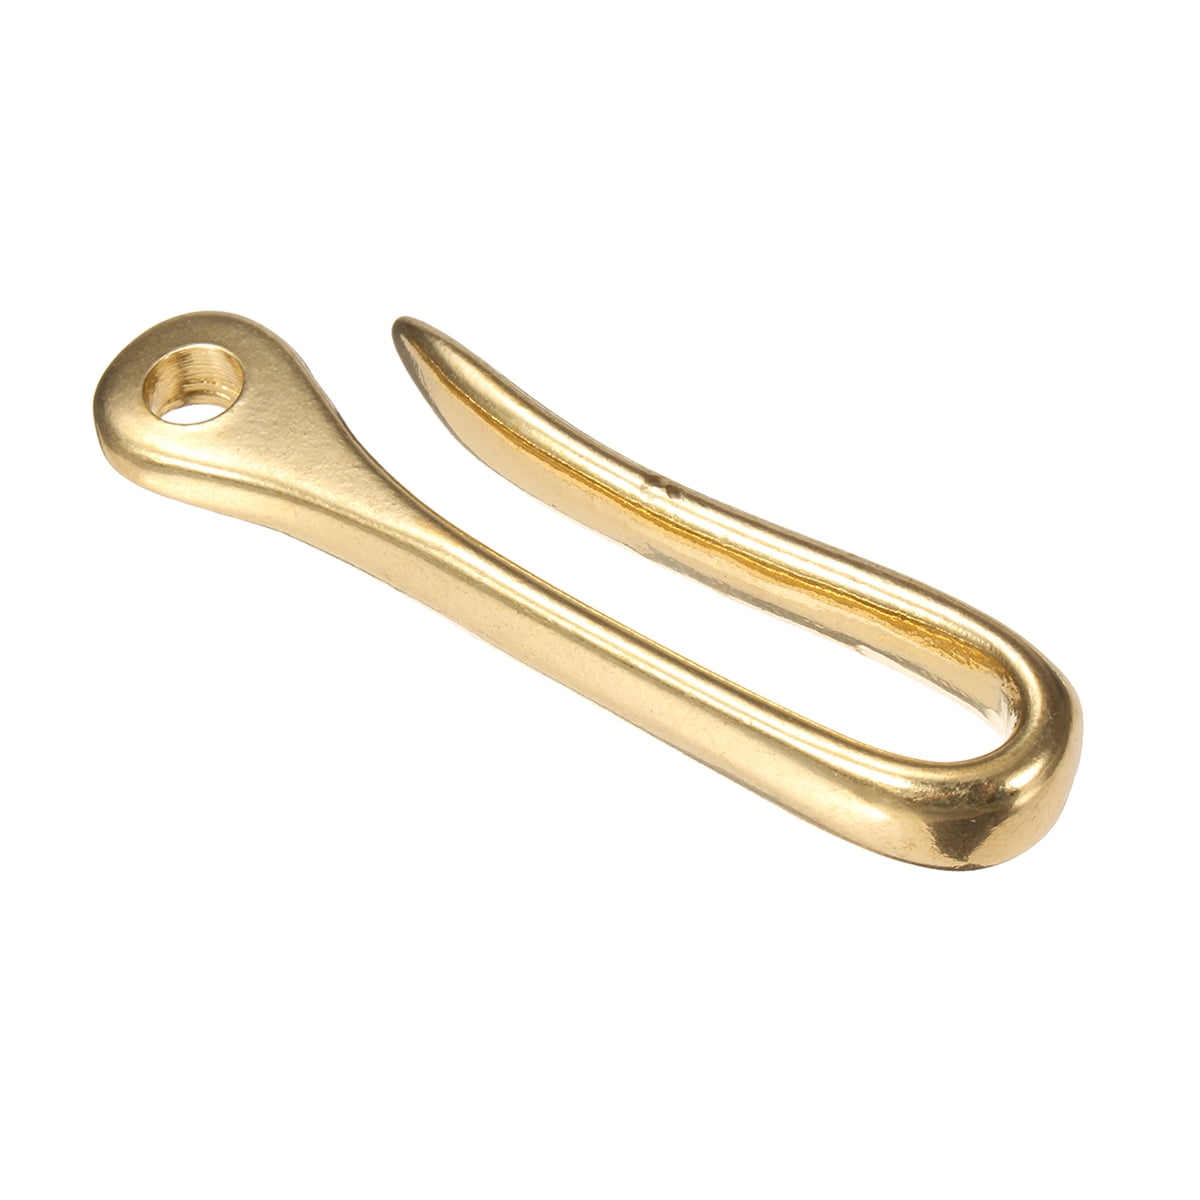 Solid Brass Fish Hook Key Chain Keyring Keys Belt Wallet Clip Keyfob Pocket Keyc 